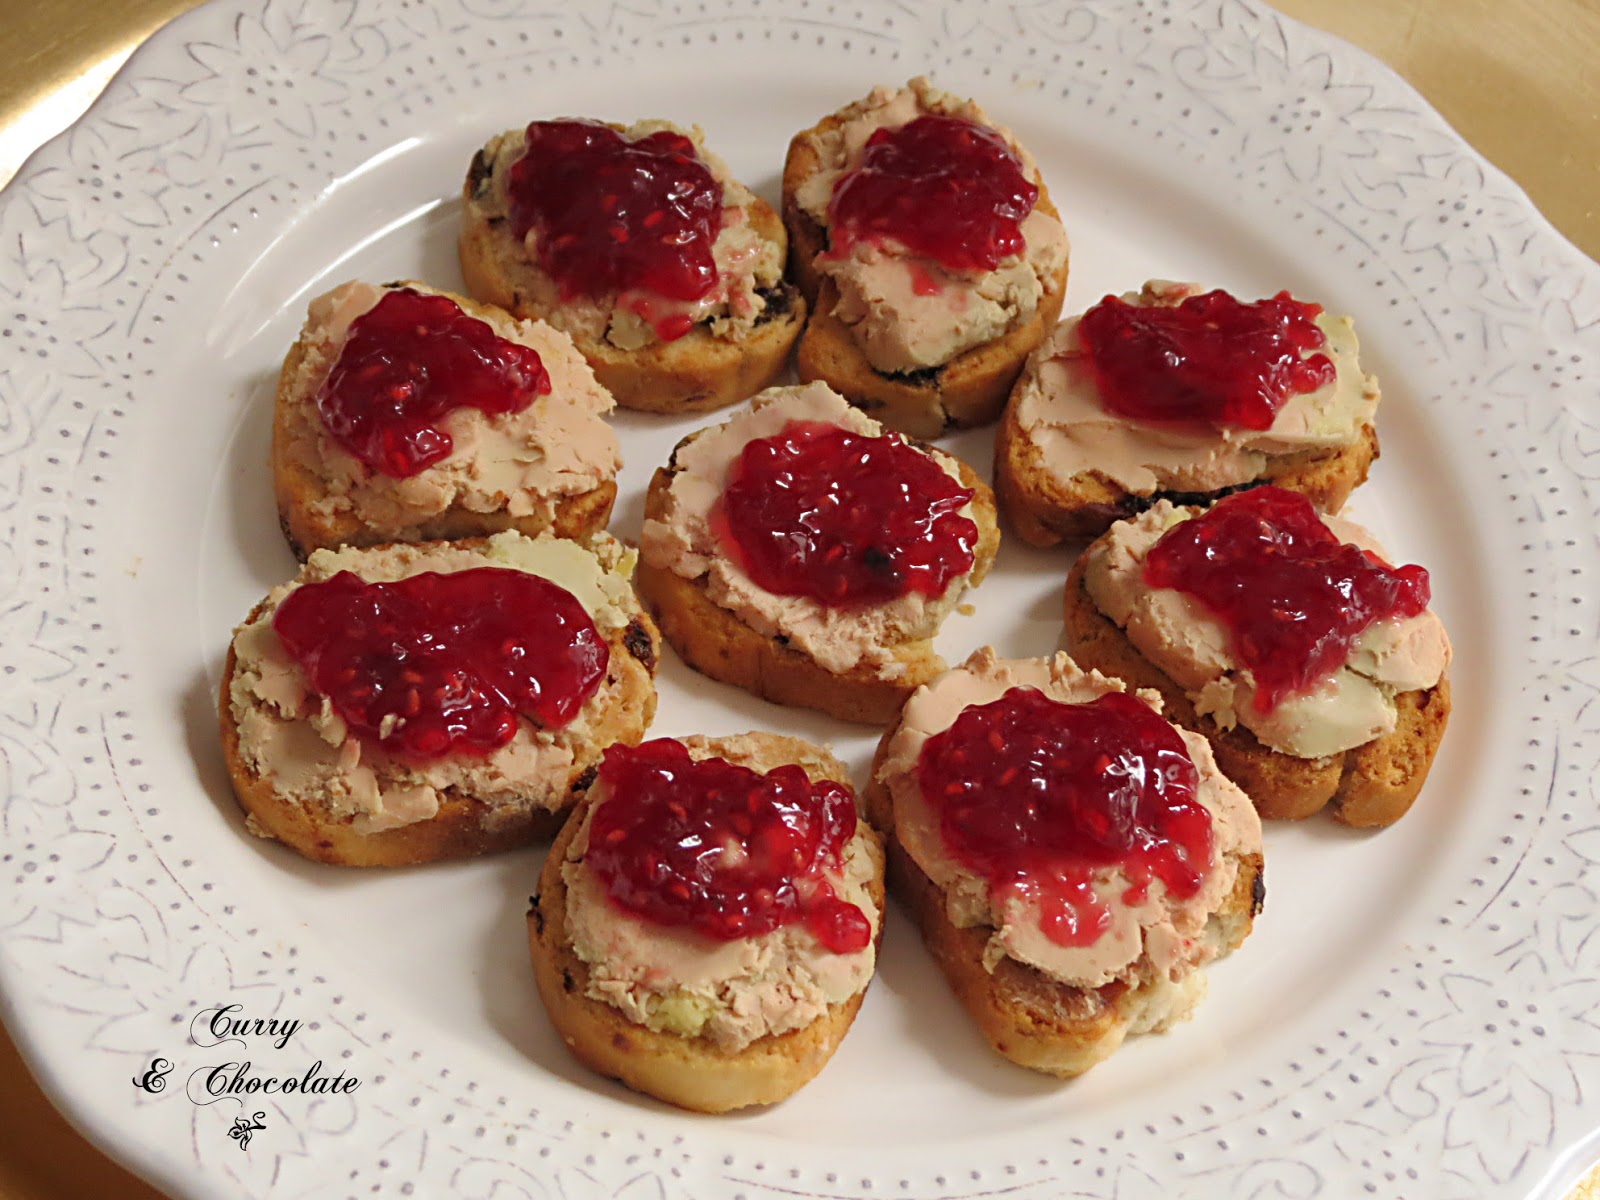 anapés de foie gras de pato y mermelada de frambuesa – Raspberry jam and foie gras appetizers